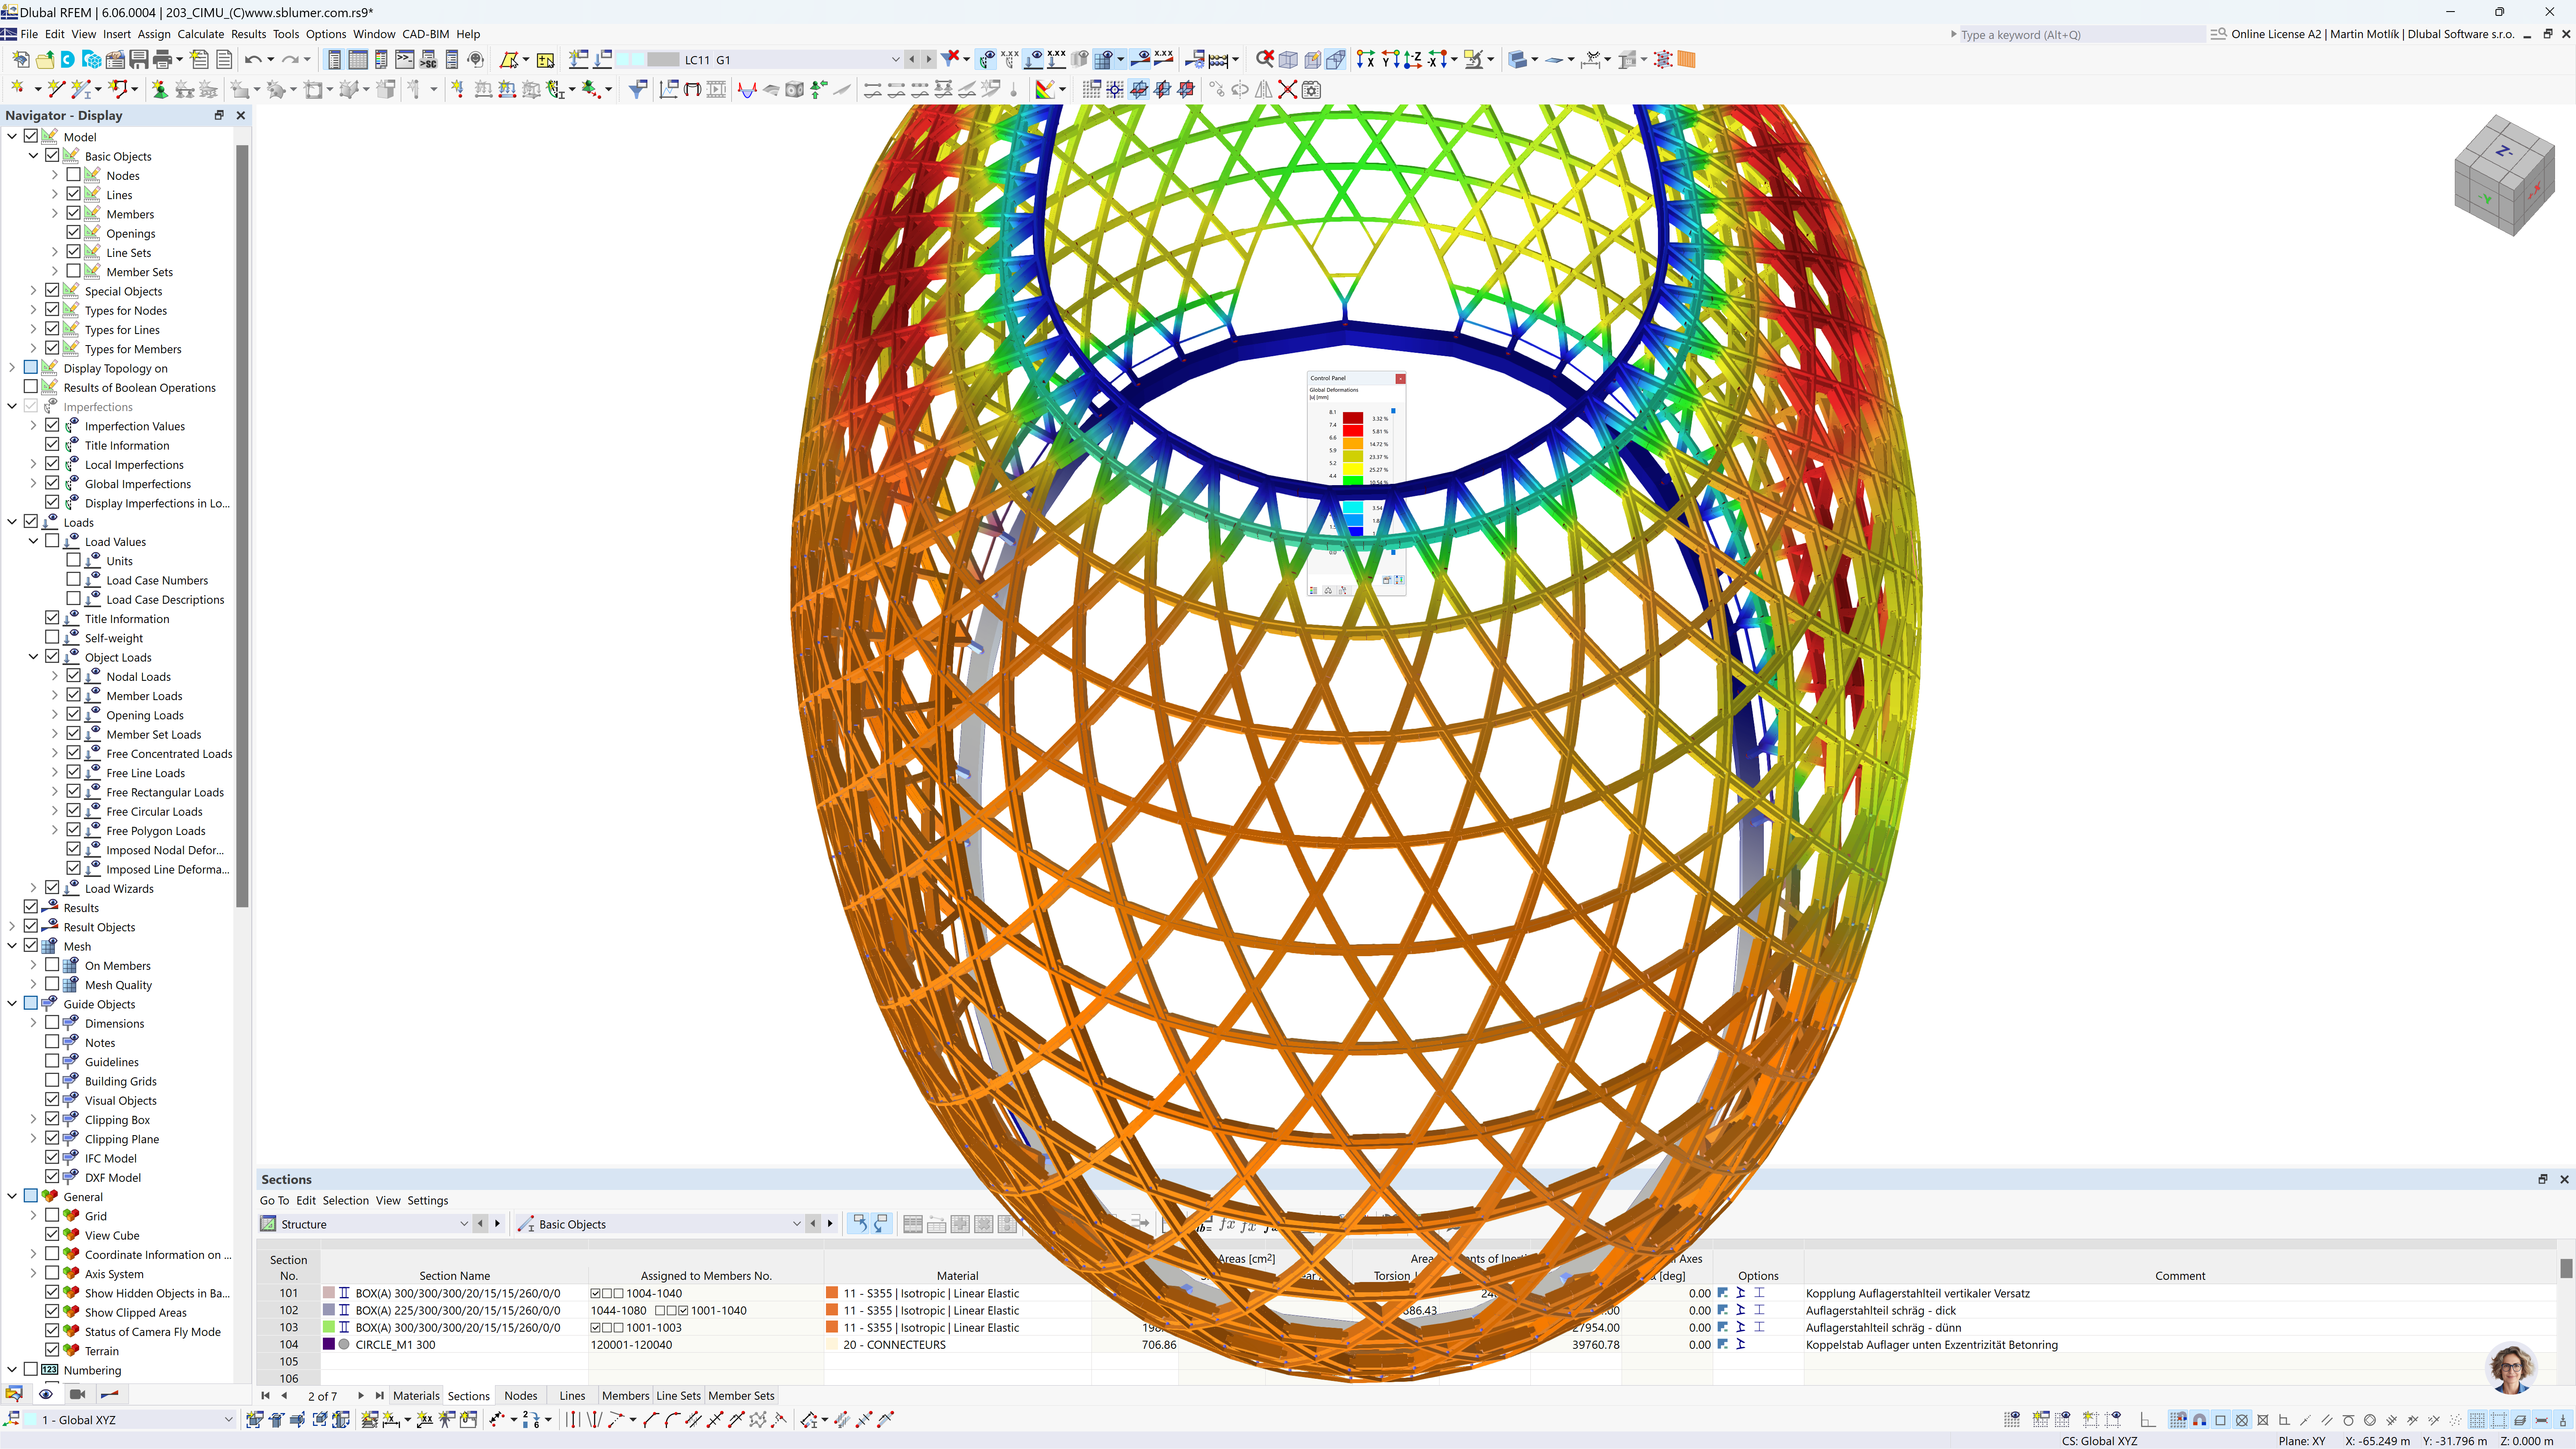 Questa immagine mostra uno screenshot di un software di analisi strutturale RFEM, possibilmente utilizzato per l'ingegneria civile o l'architettura. La vista principale mostra un modello 3D di una struttura reticolare toroidale multicolore, dove ogni colore probabilmente rappresenta diversi valori di tensione o materiali.